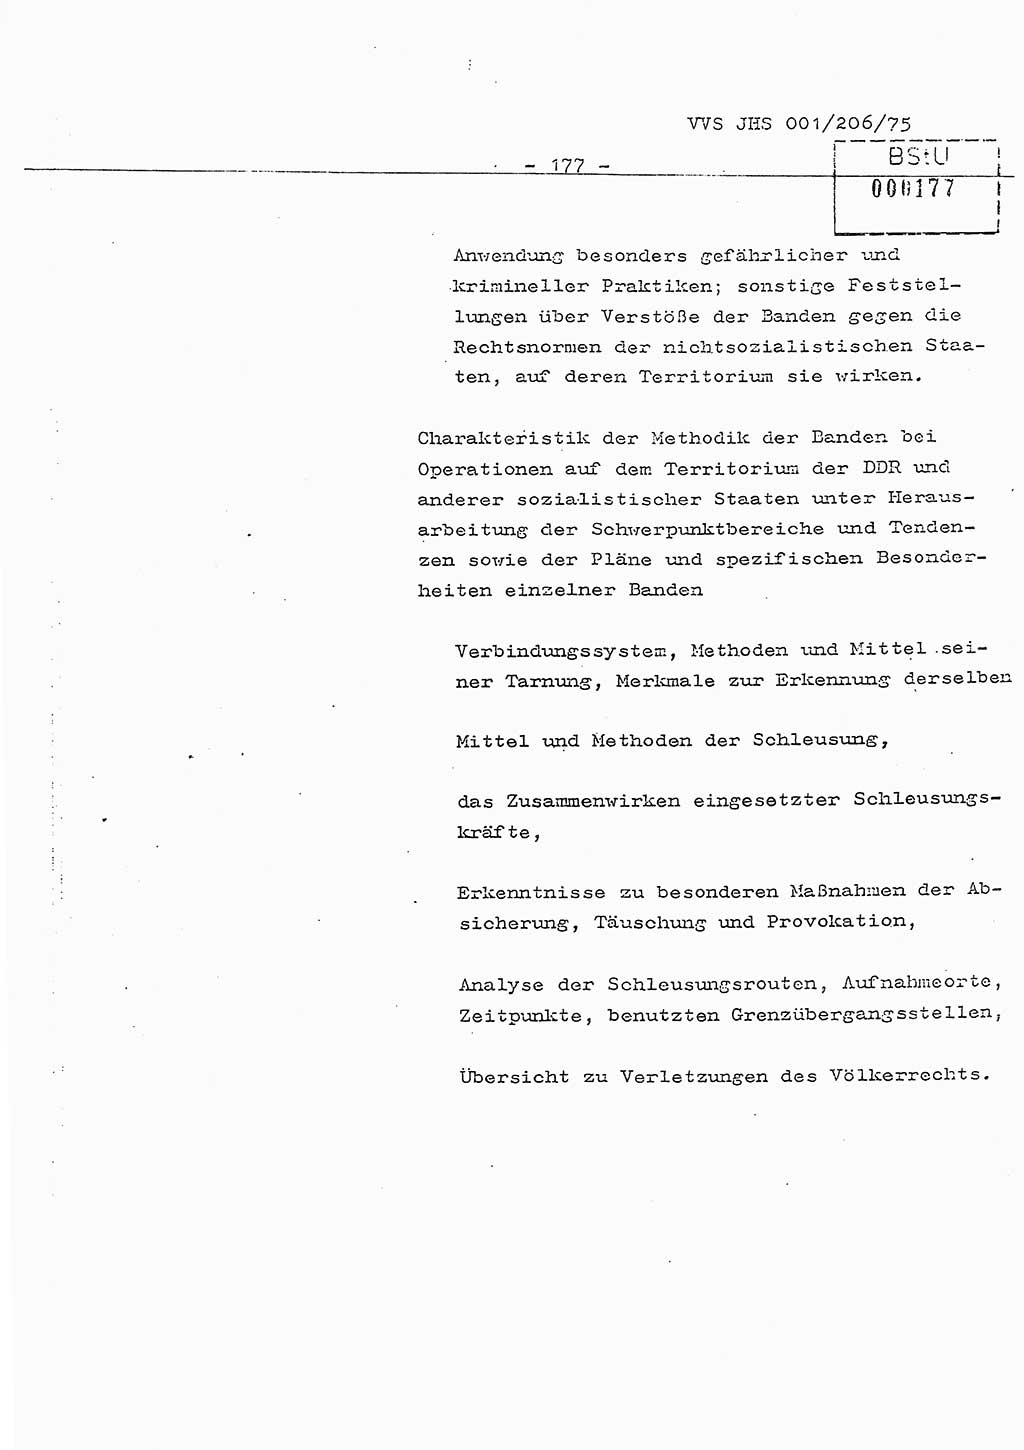 Dissertation Generalmajor Manfred Hummitzsch (Leiter der BV Leipzig), Generalmajor Heinz Fiedler (HA Ⅵ), Oberst Rolf Fister (HA Ⅸ), Ministerium für Staatssicherheit (MfS) [Deutsche Demokratische Republik (DDR)], Juristische Hochschule (JHS), Vertrauliche Verschlußsache (VVS) 001-206/75, Potsdam 1975, Seite 177 (Diss. MfS DDR JHS VVS 001-206/75 1975, S. 177)